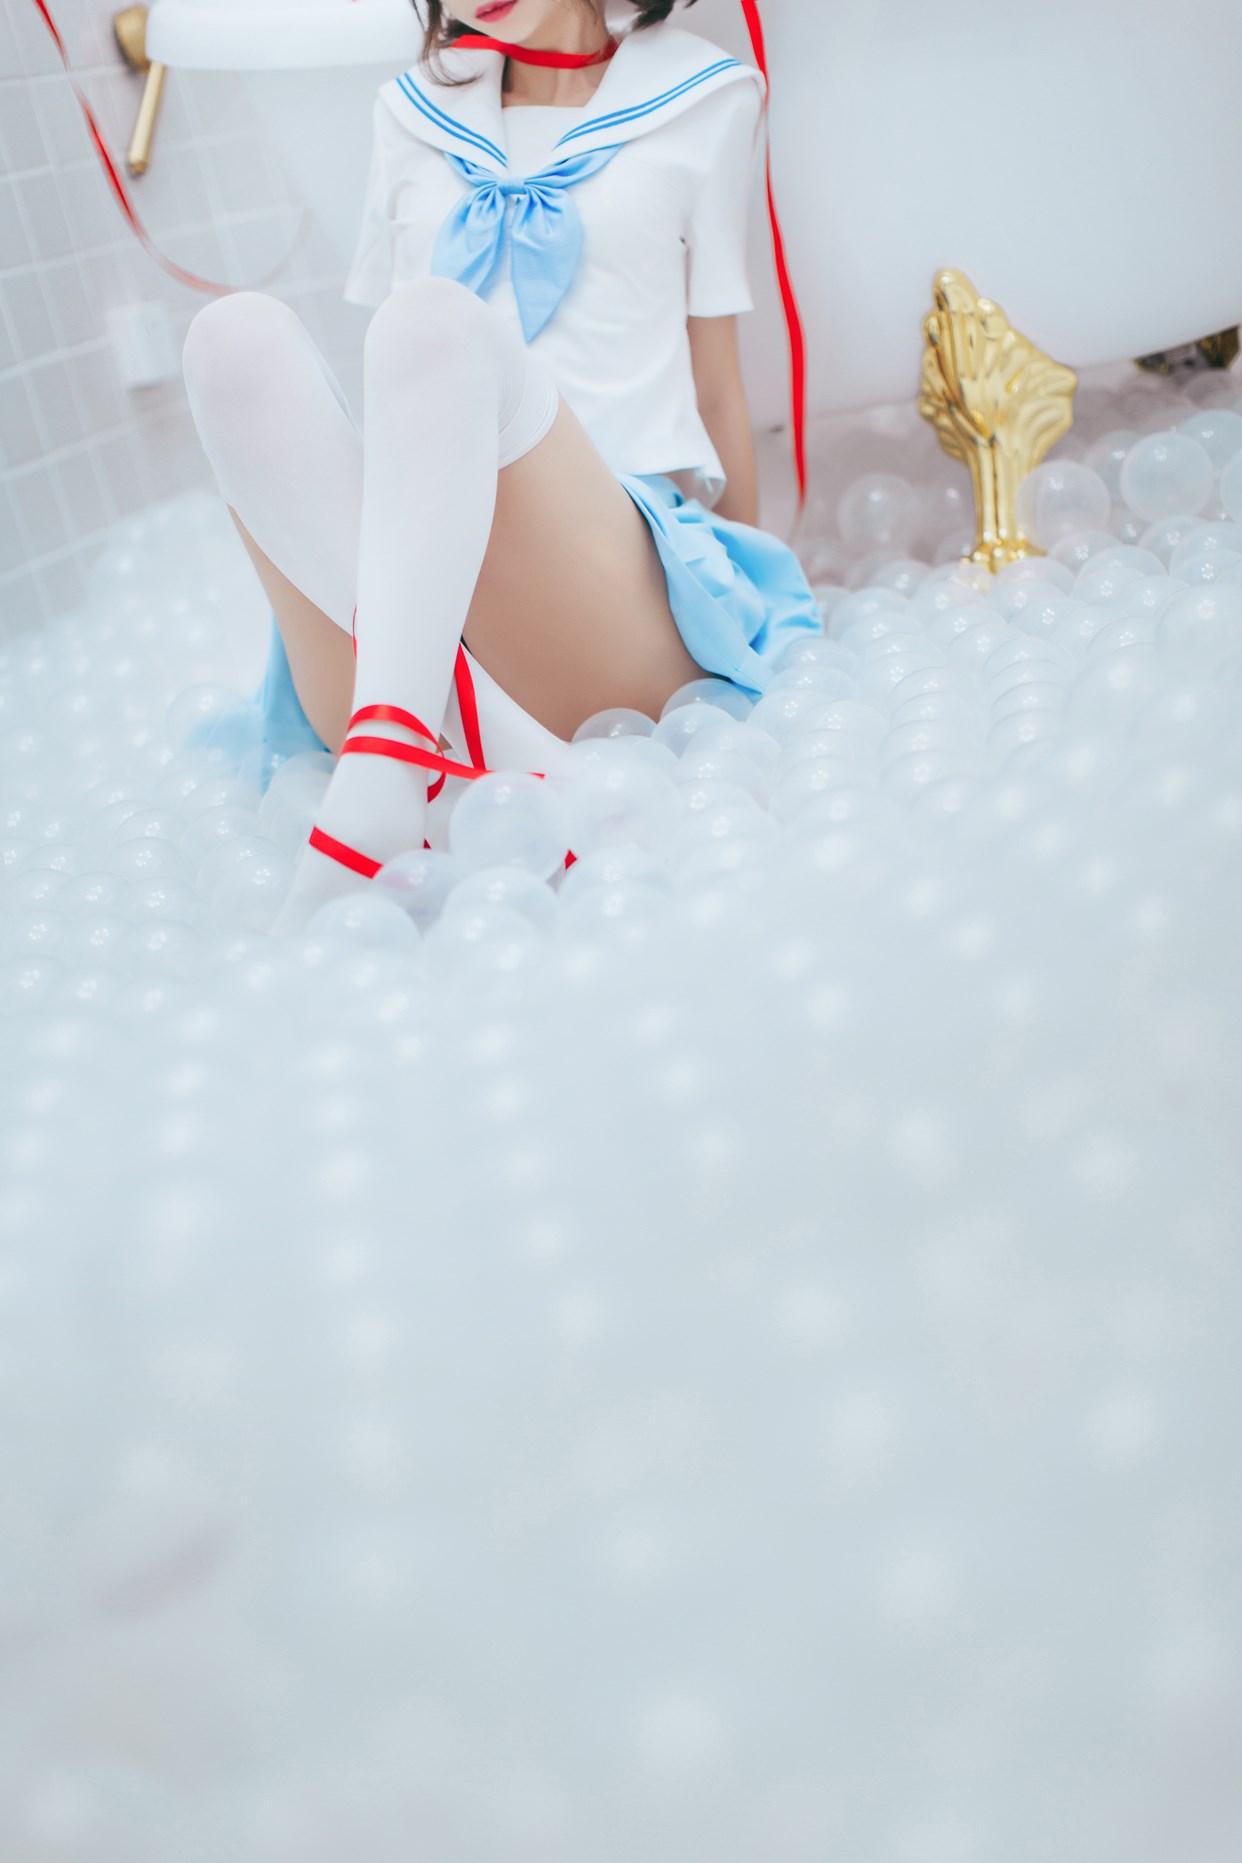 【兔玩映画】睡衣与浴室的水手服 兔玩映画 第41张